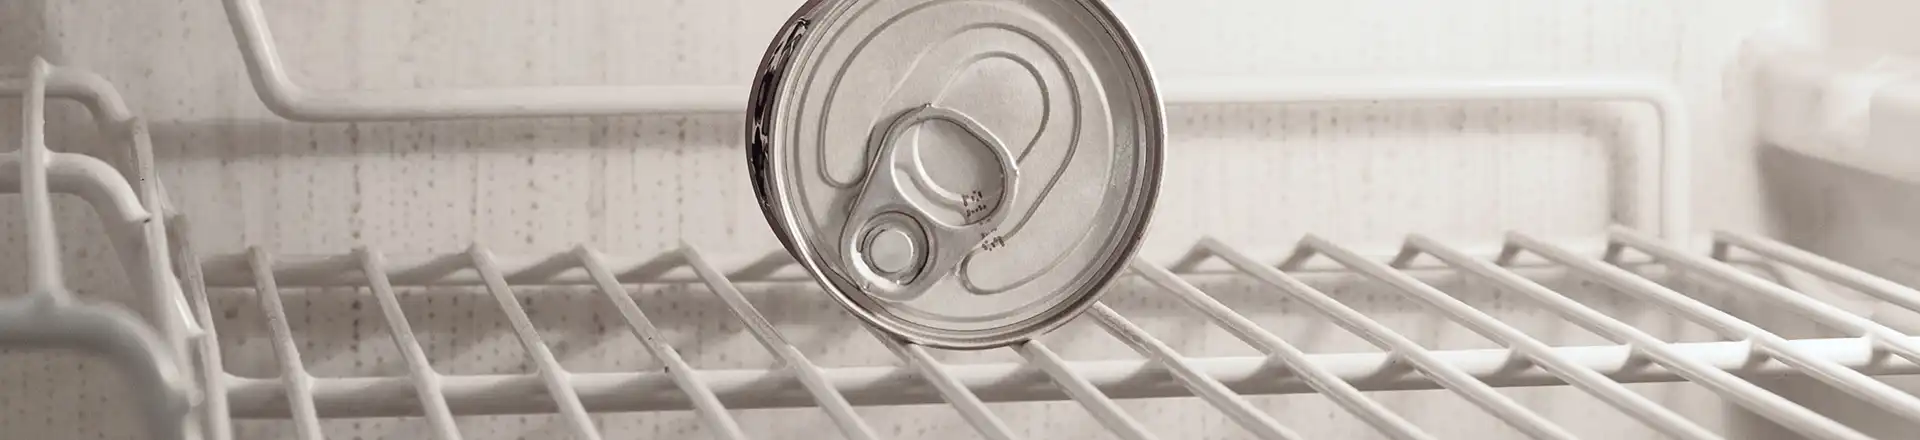 A can inside of a bar fridge